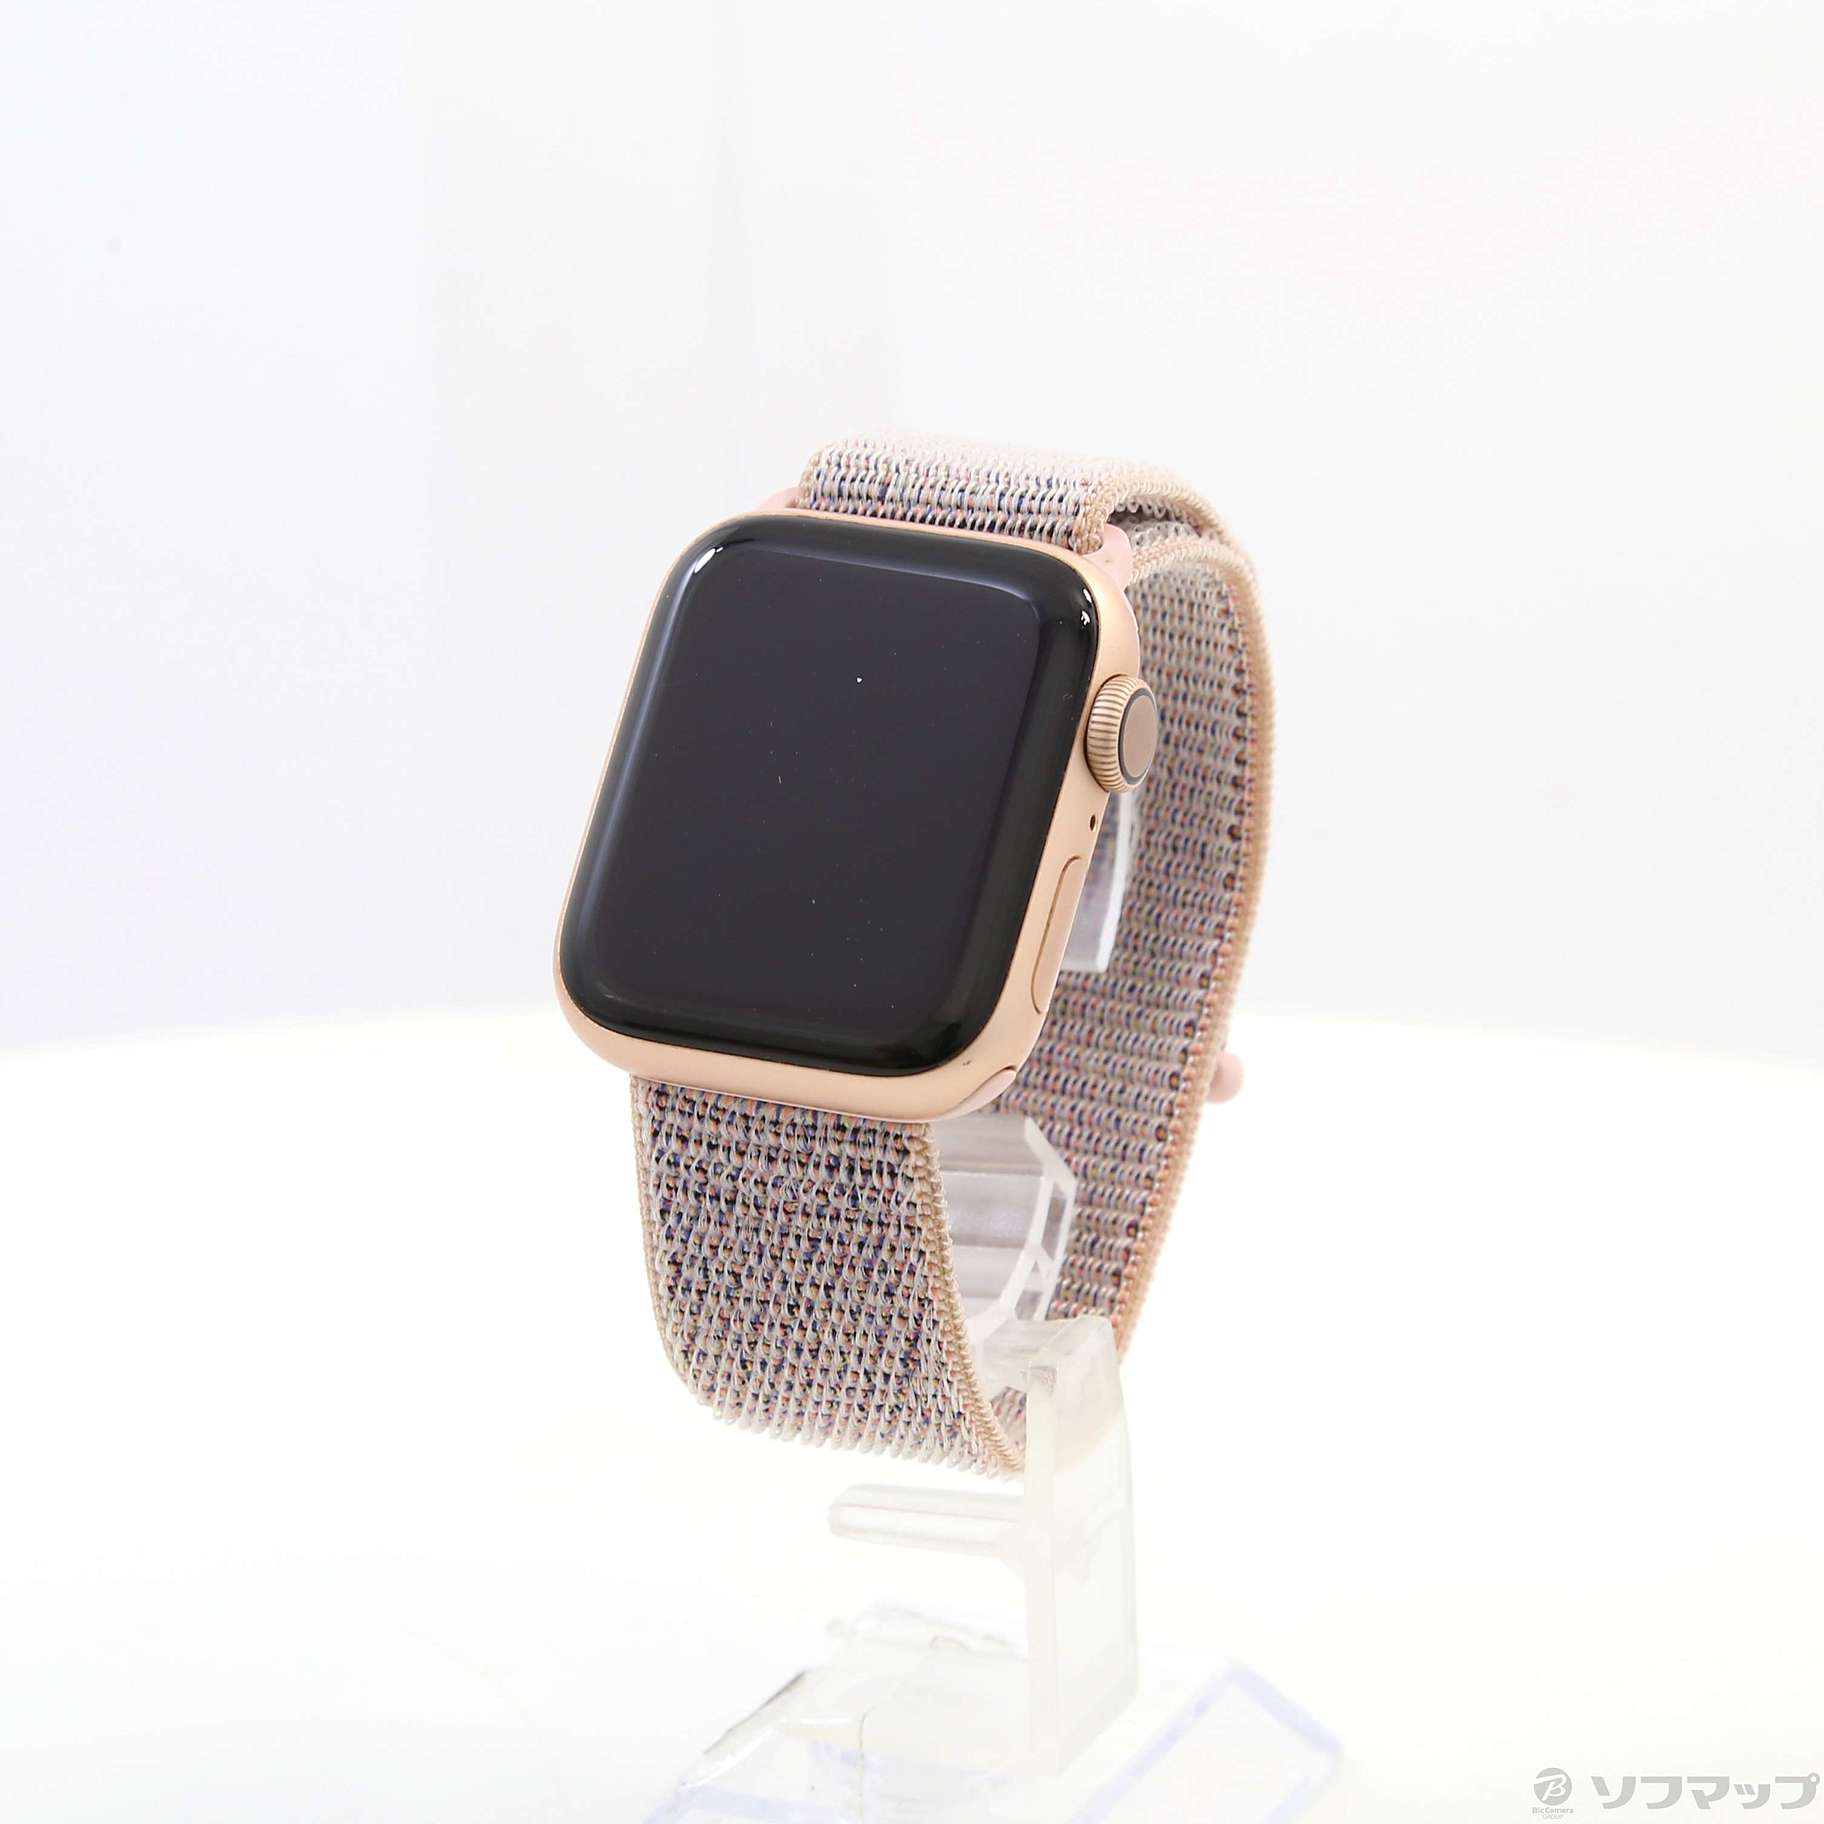 14950円 新作人気モデル Apple Watch Series 4 40mm GPSゴールド アルミニウム